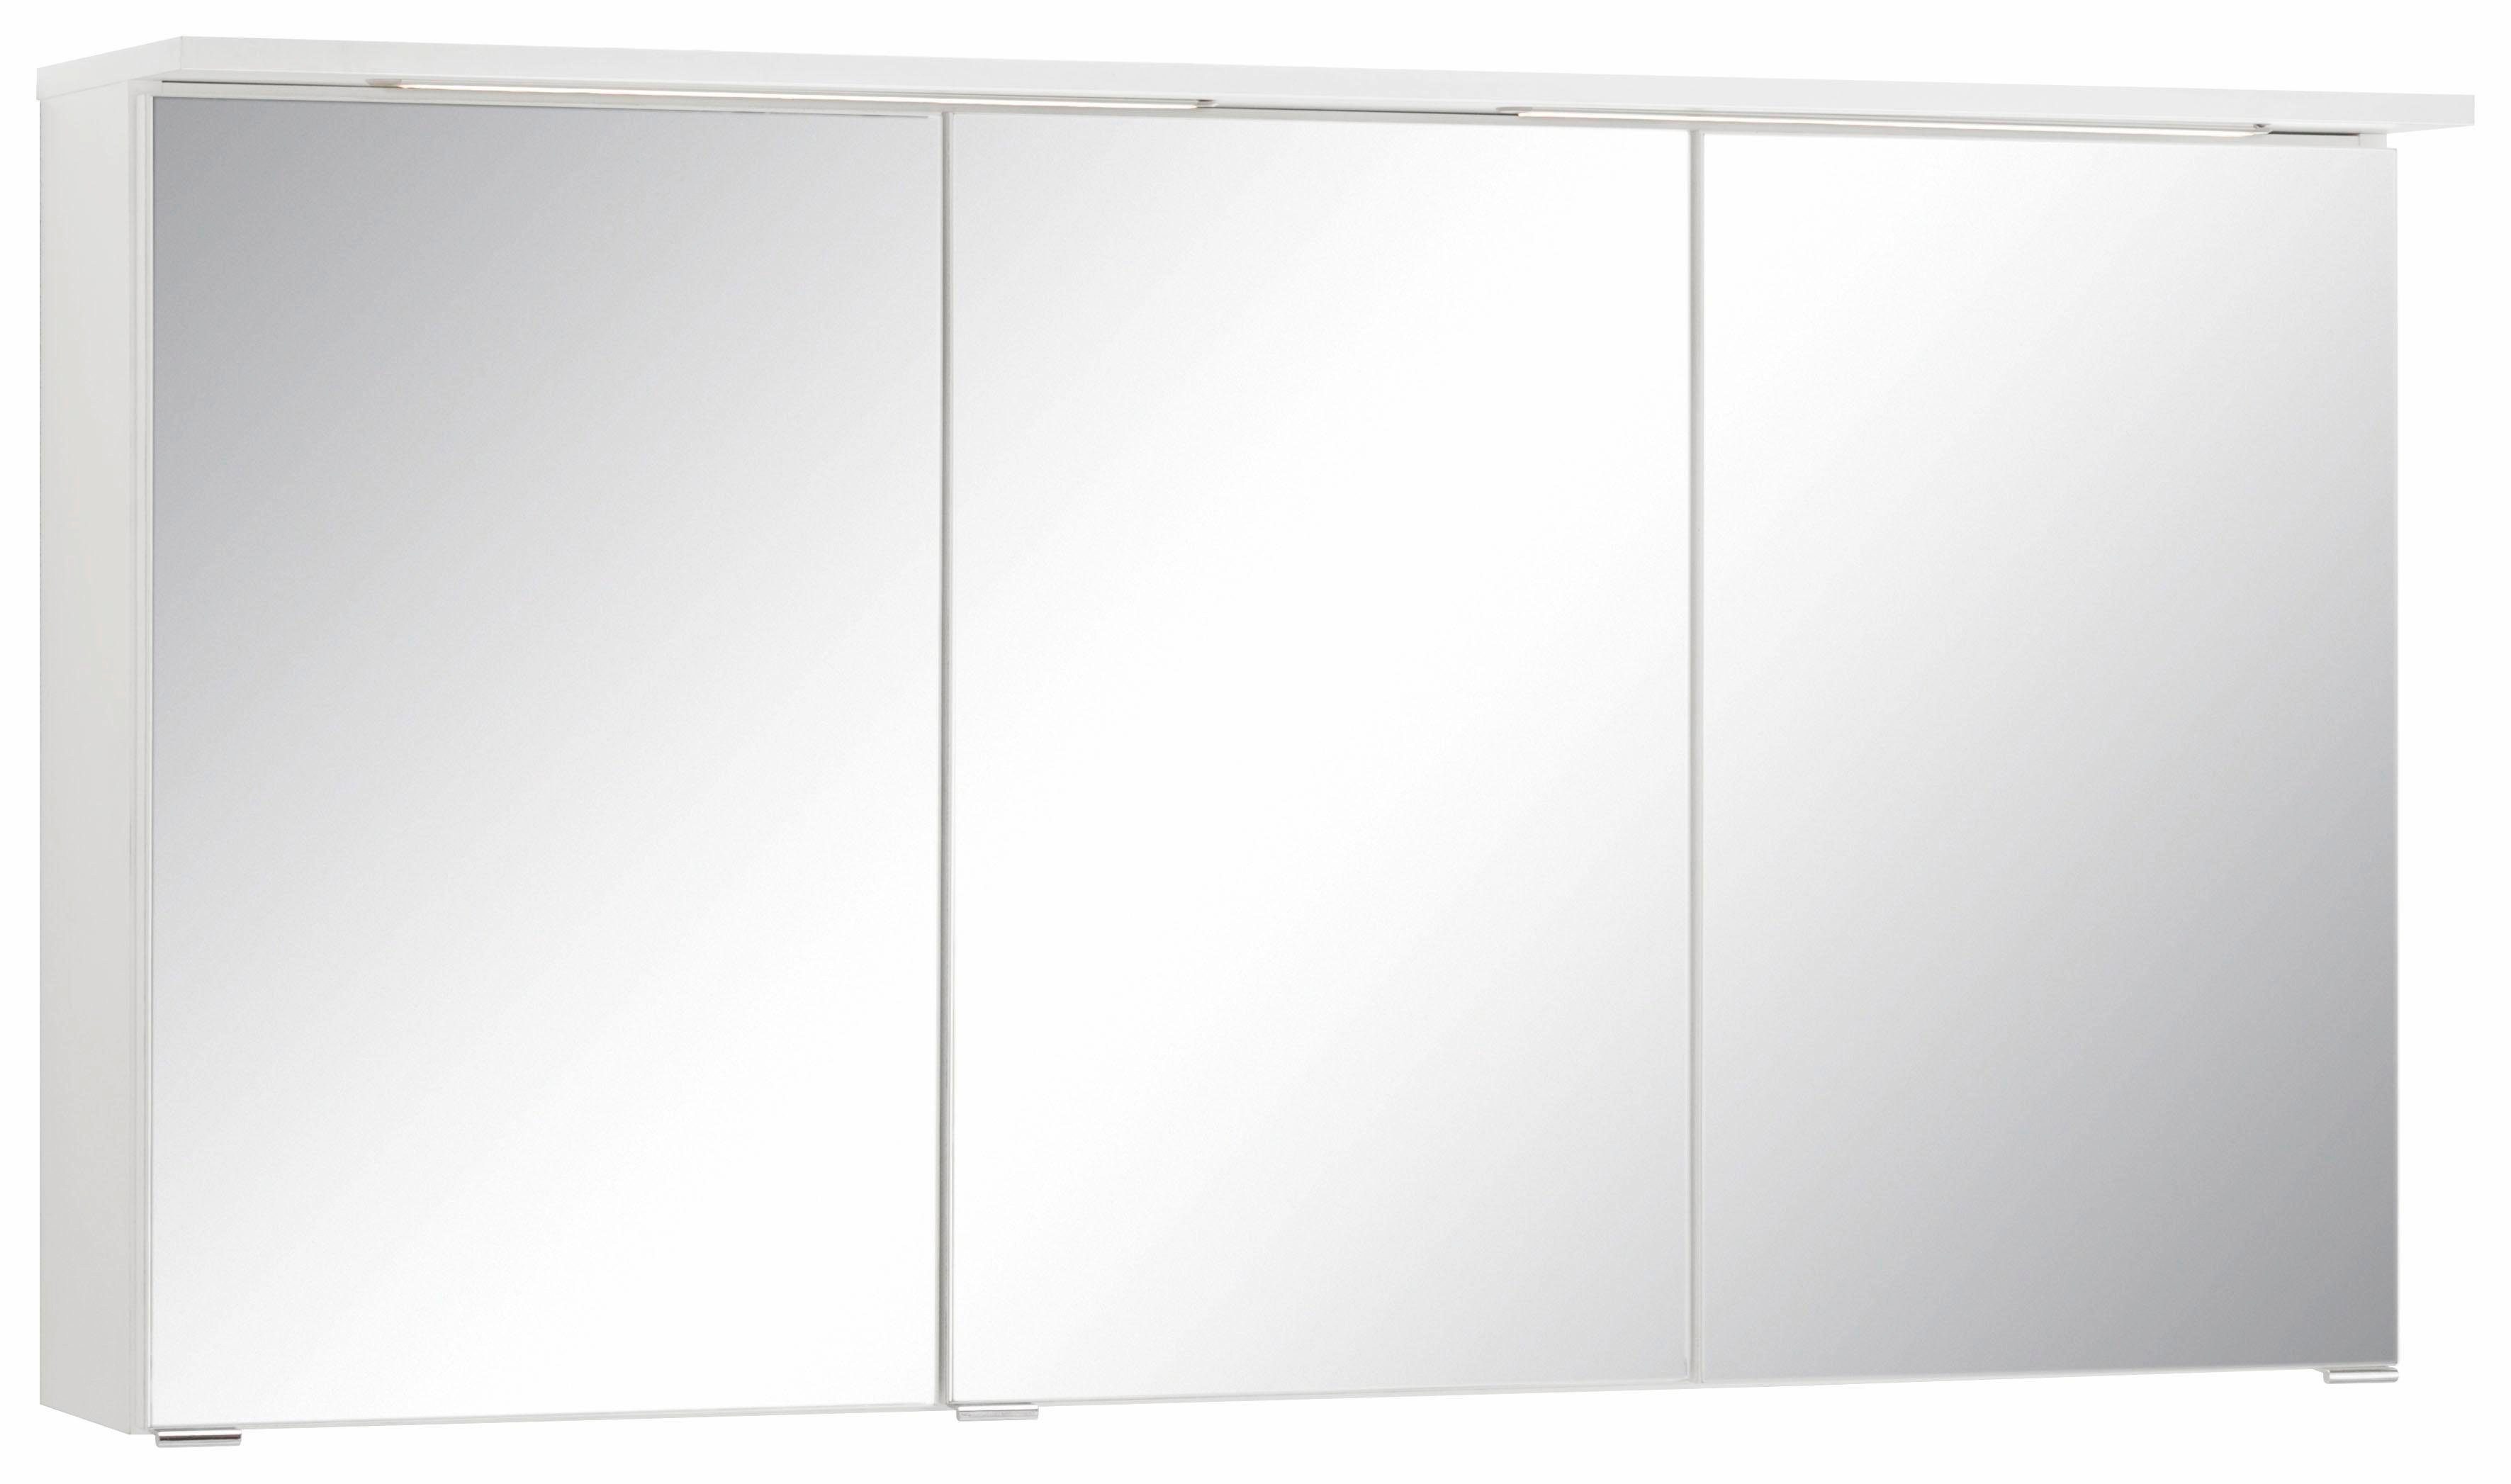 HELD MÖBEL Spiegelschrank Ravenna Breite 120 cm, mit LED Beleuchtung weiß | weiß